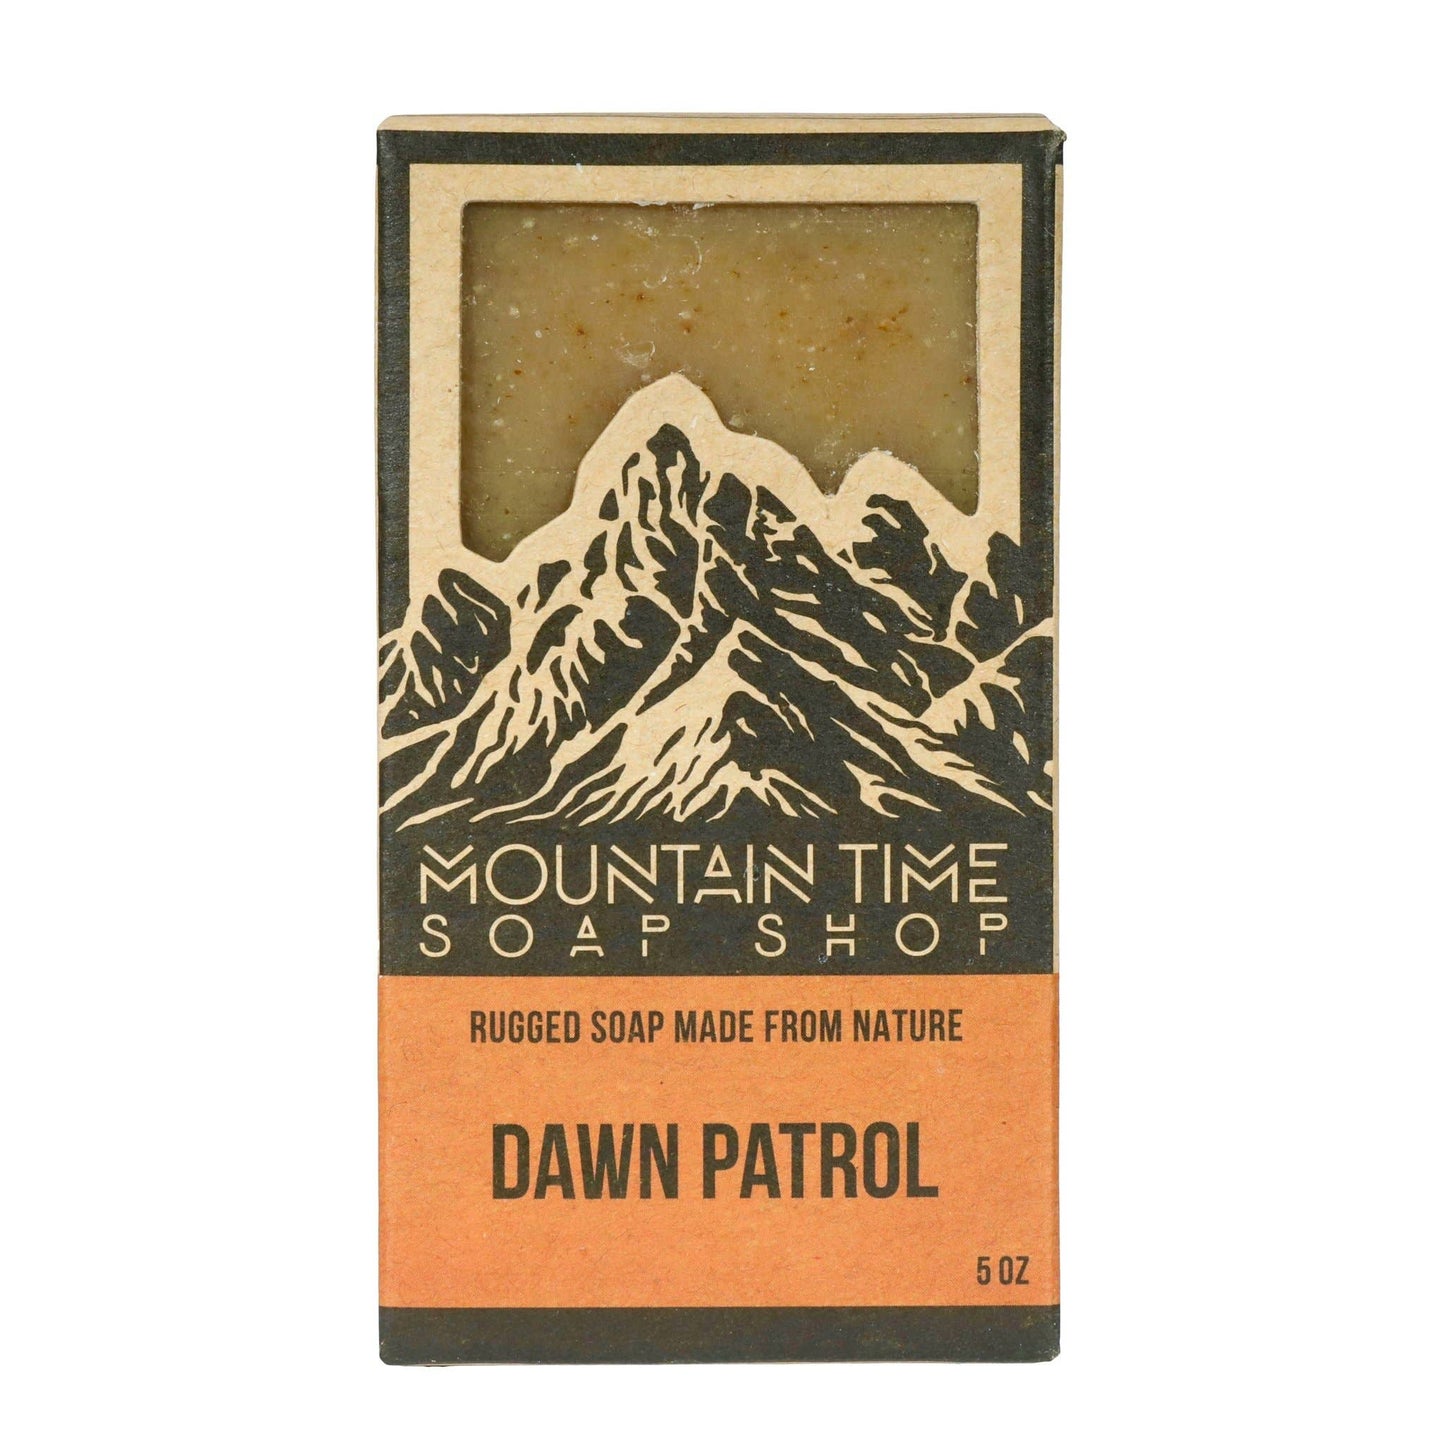 MOUNTAIN TIME SOAP - Dawn Patrol